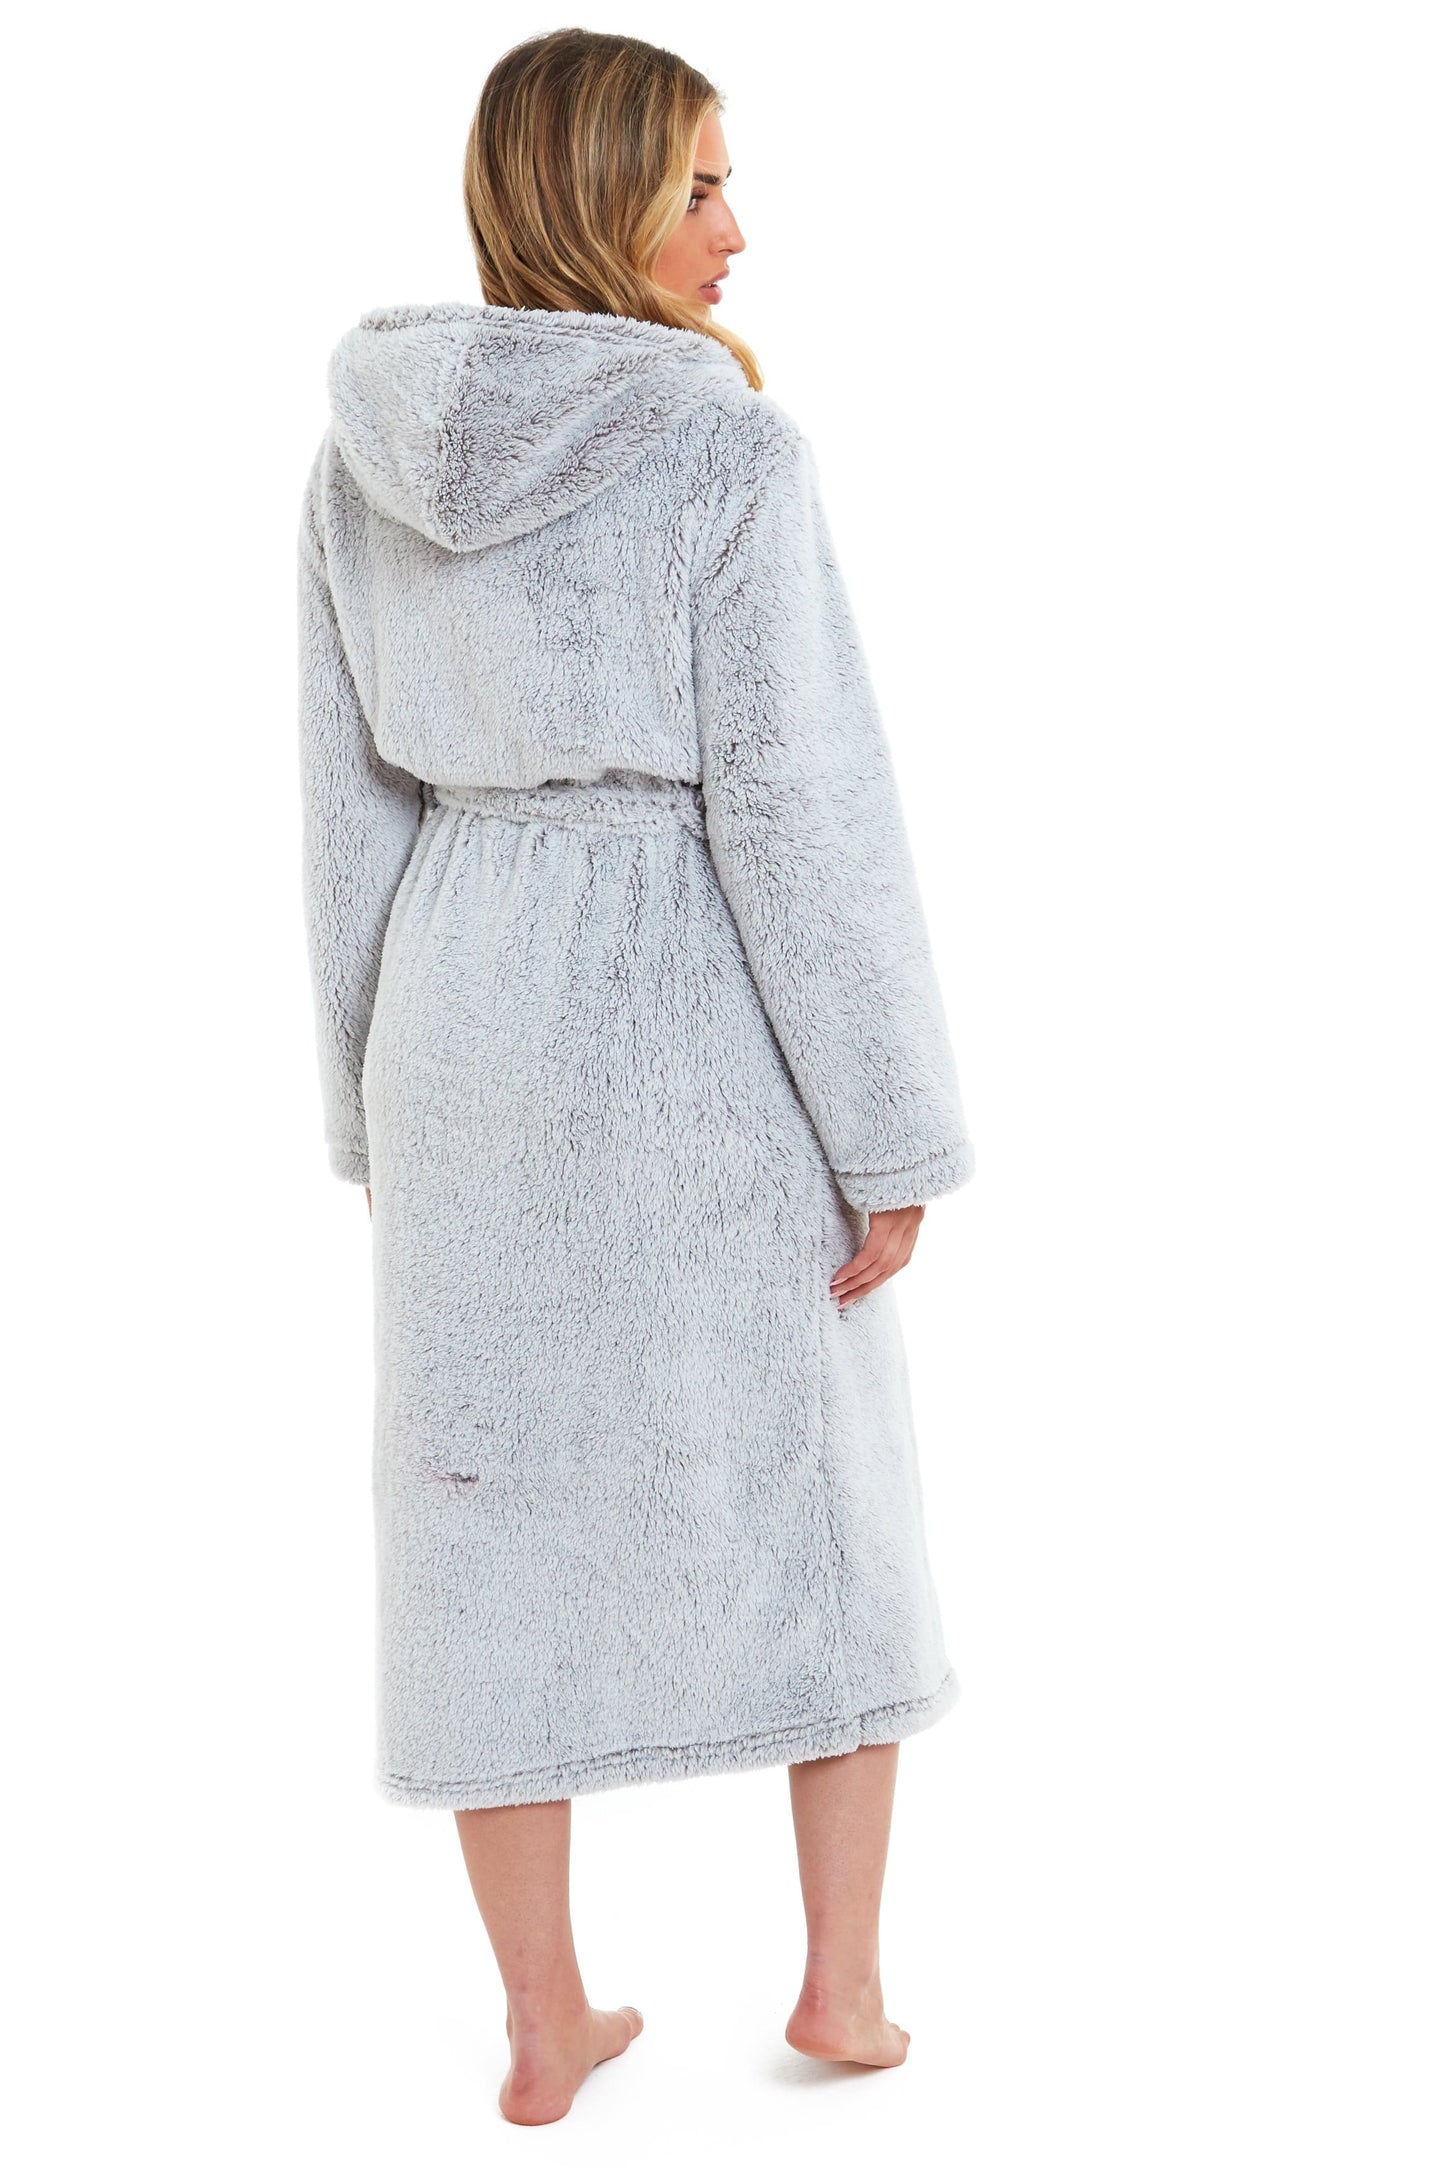 Shimmer Grey Snuggle Velvet Touch Fleece Hooded Robe Dressing Gown Daisy Dreamer Dressing Gown